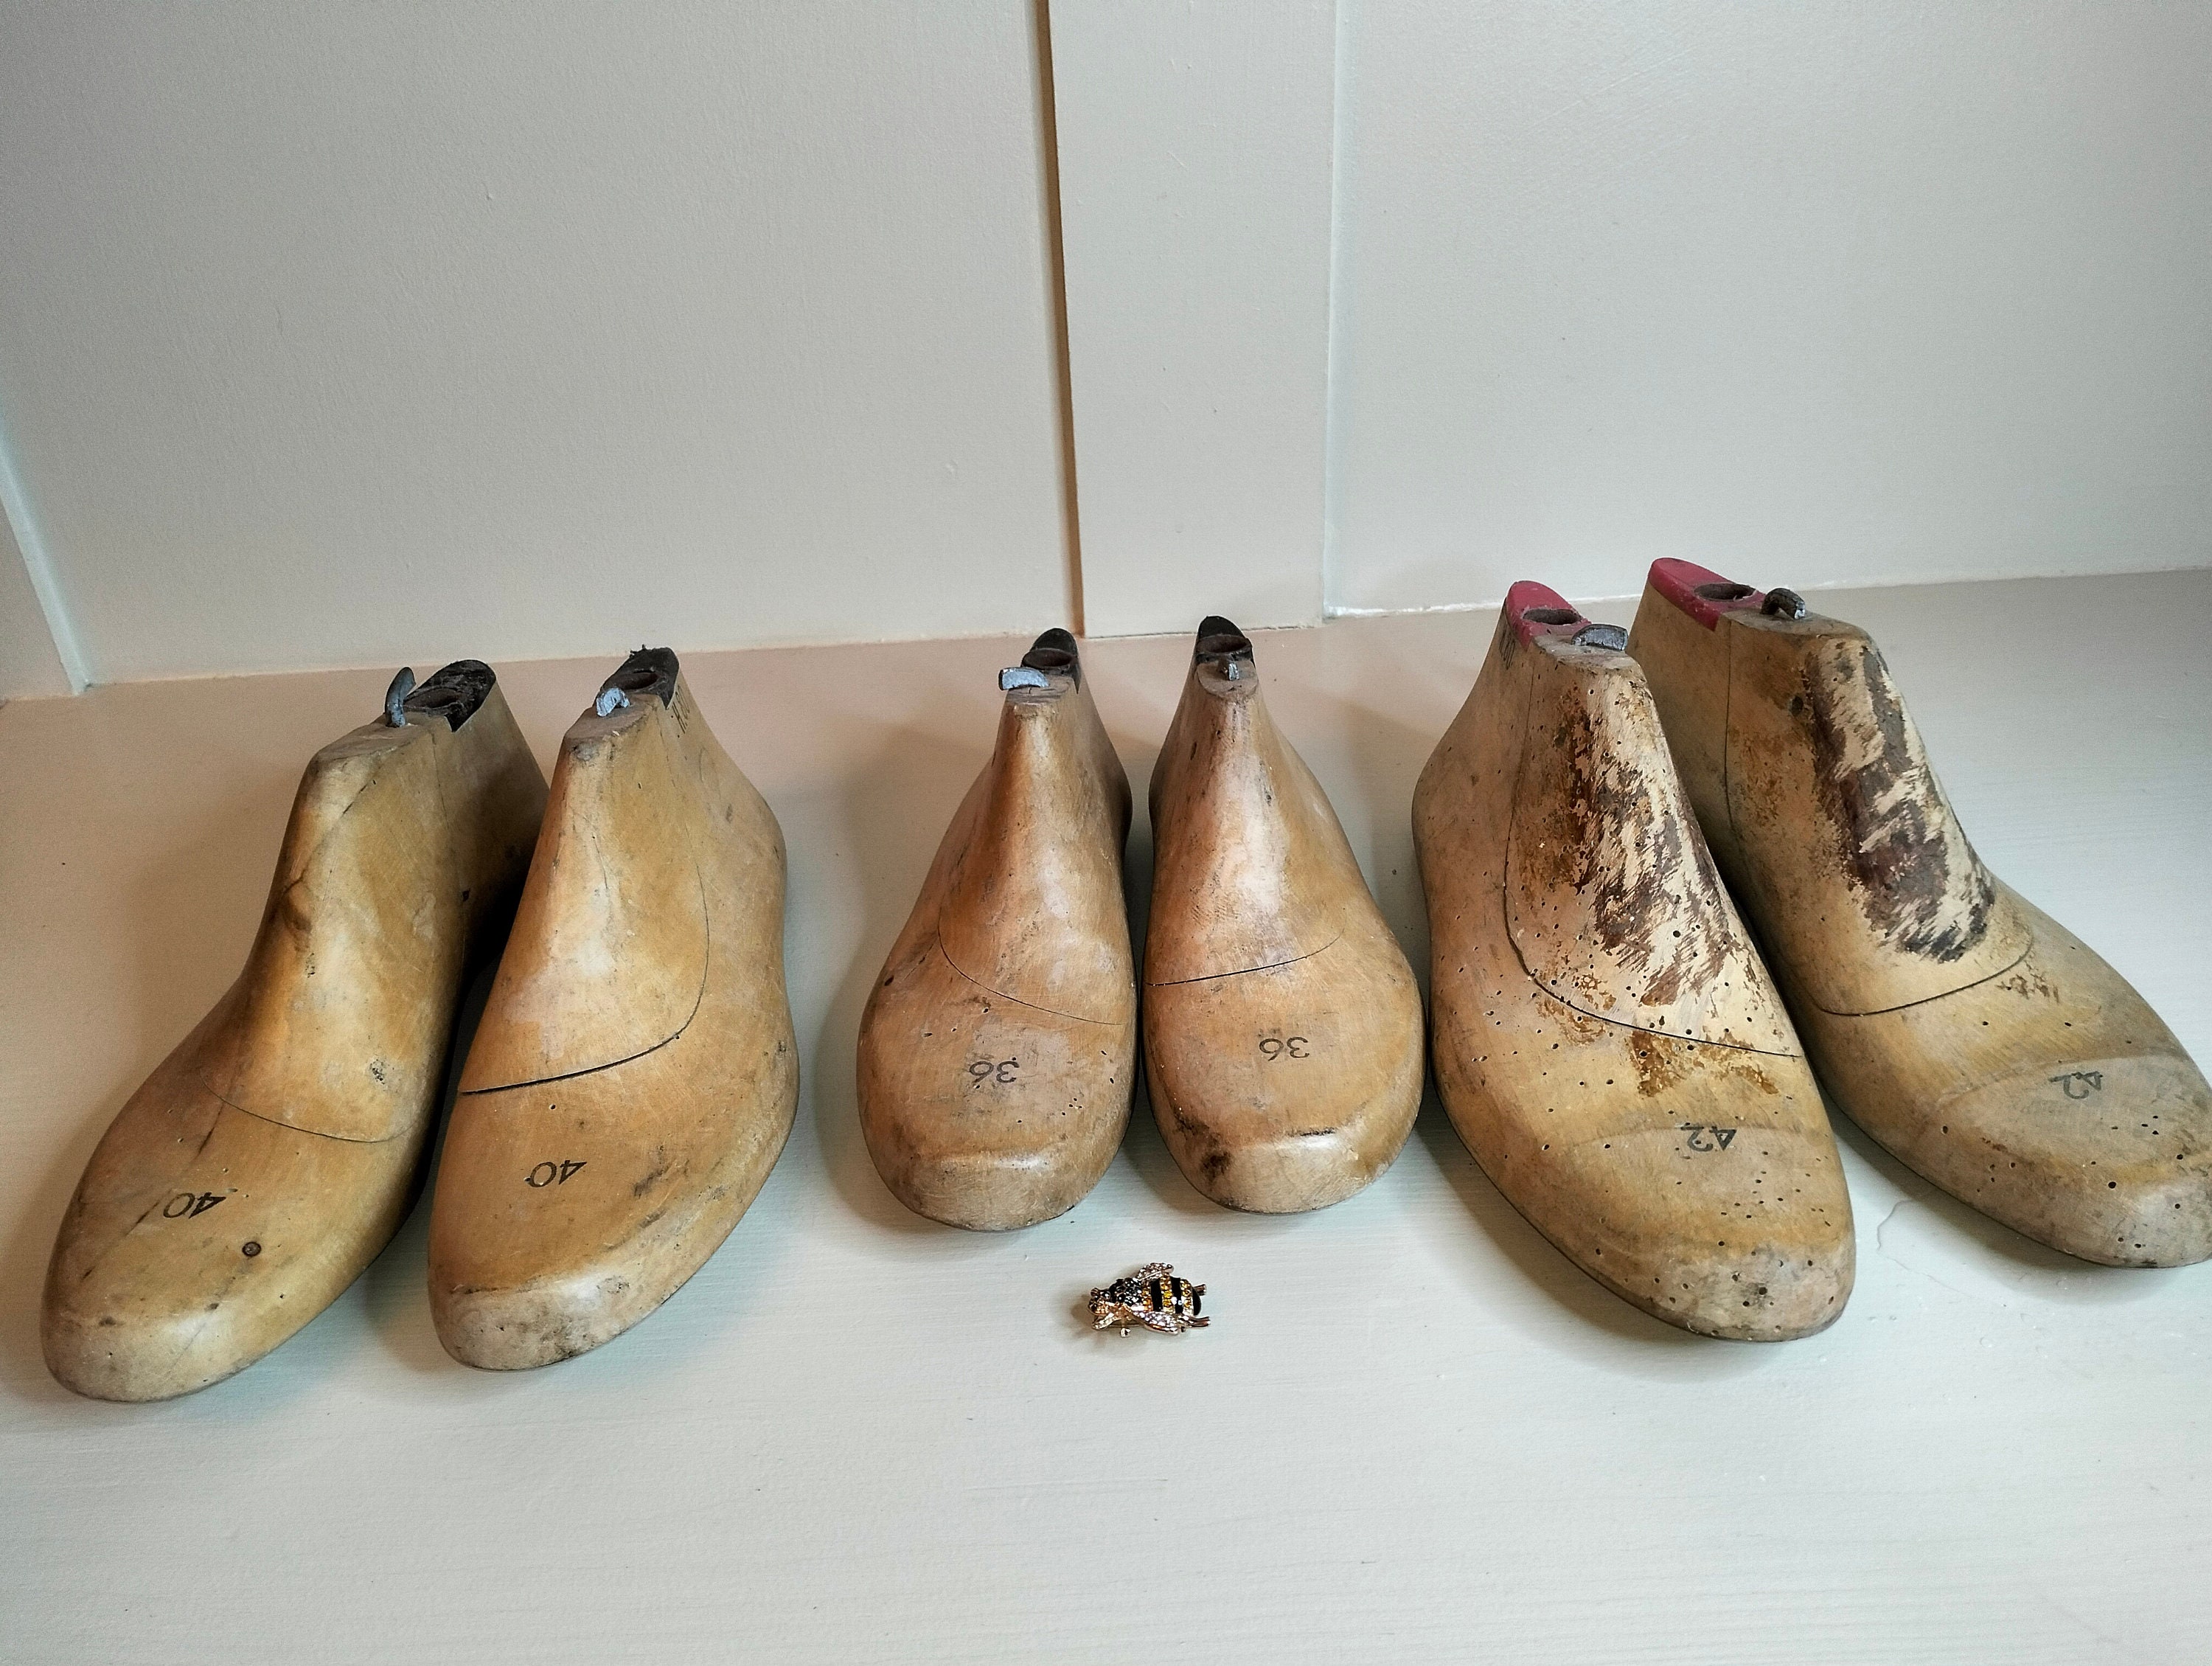 Zapatos Estiradores Formas de Zapatos Zapatos Vintage Wooden Shoe Lasts Zapatos Plantillas y accesorios Hormas Herramientas de Madera Primitivas. Herramientas Zapacos 